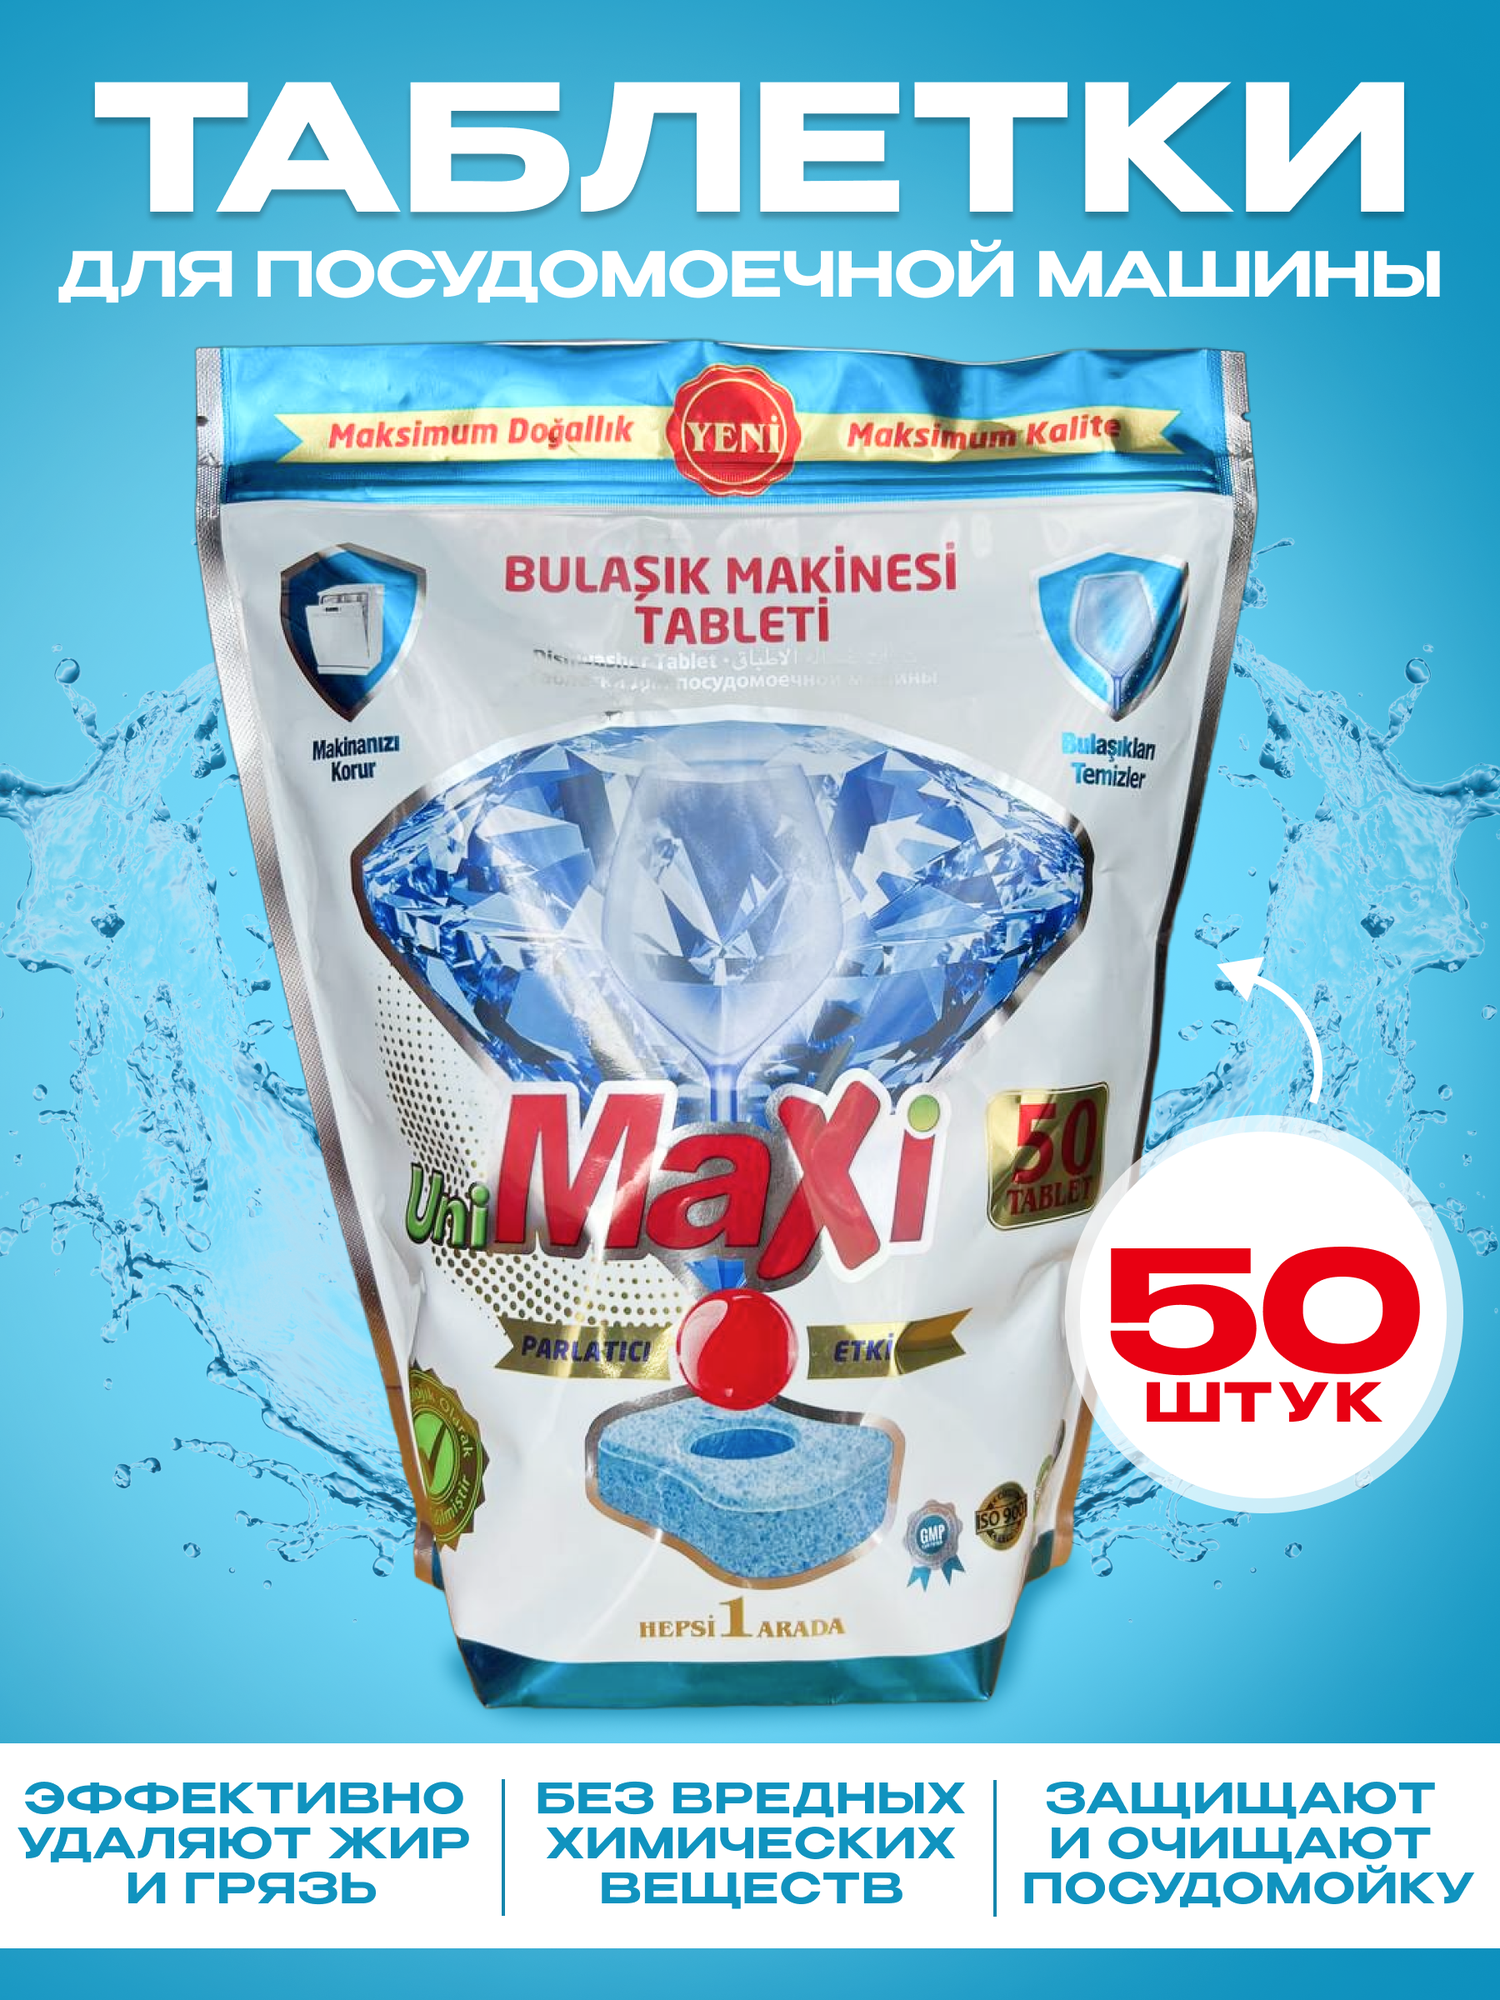 Таблетки для посудомоечных машин UniMaxi бесфосфатные таблетки для мытья посуды, 50 шт. Турция - фотография № 1